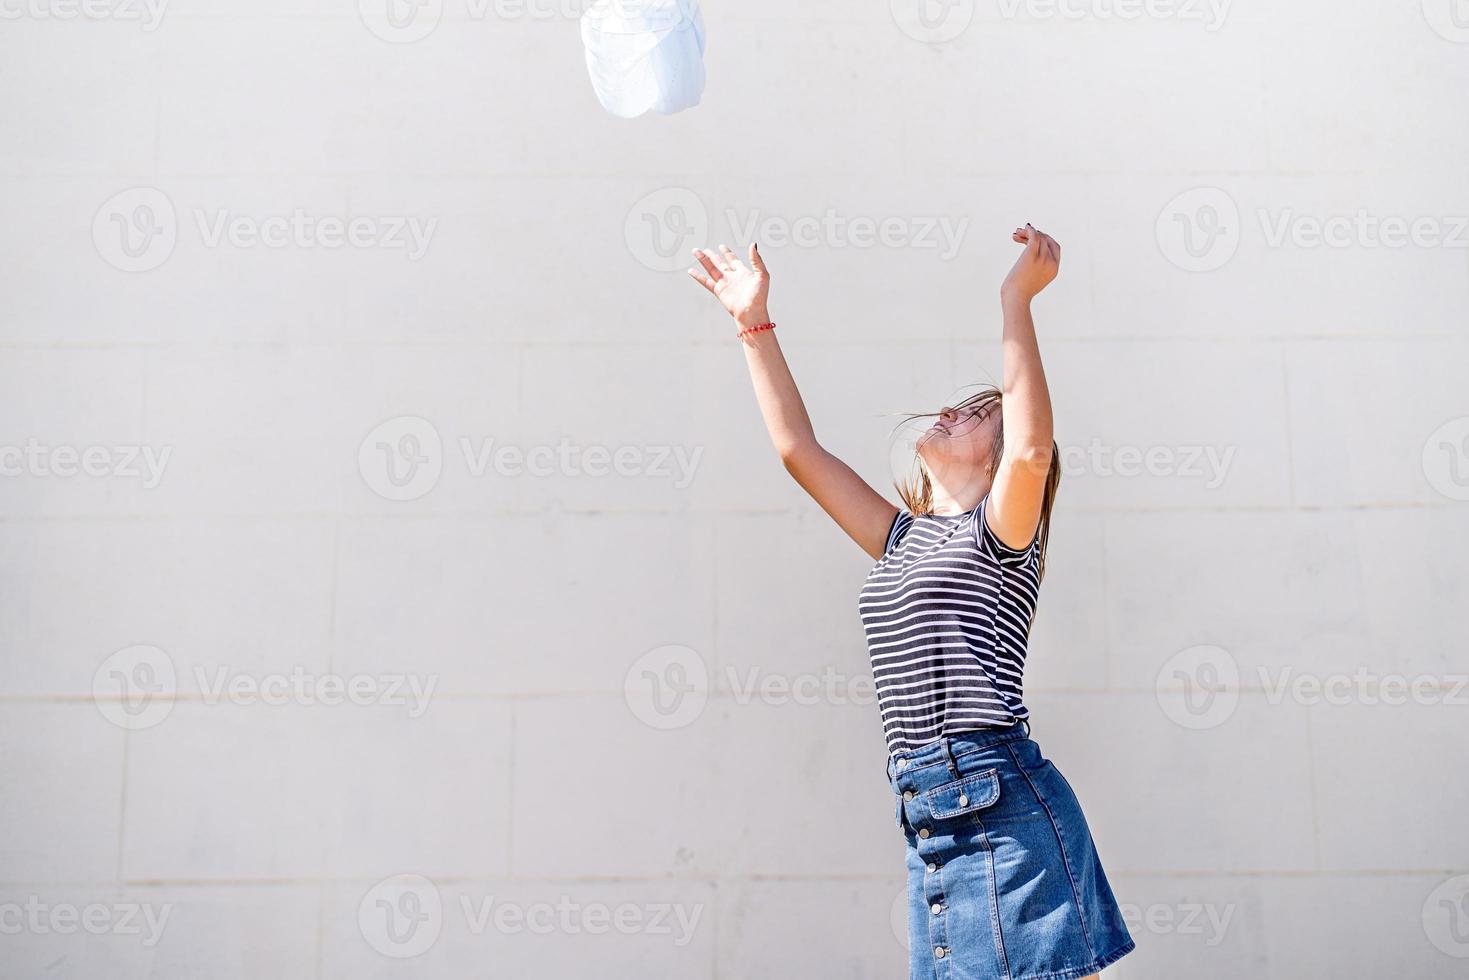 gelukkige jonge blanke vrouw die haar blauwe stof overgeeft en plezier heeft op een zonnige zomerdag foto